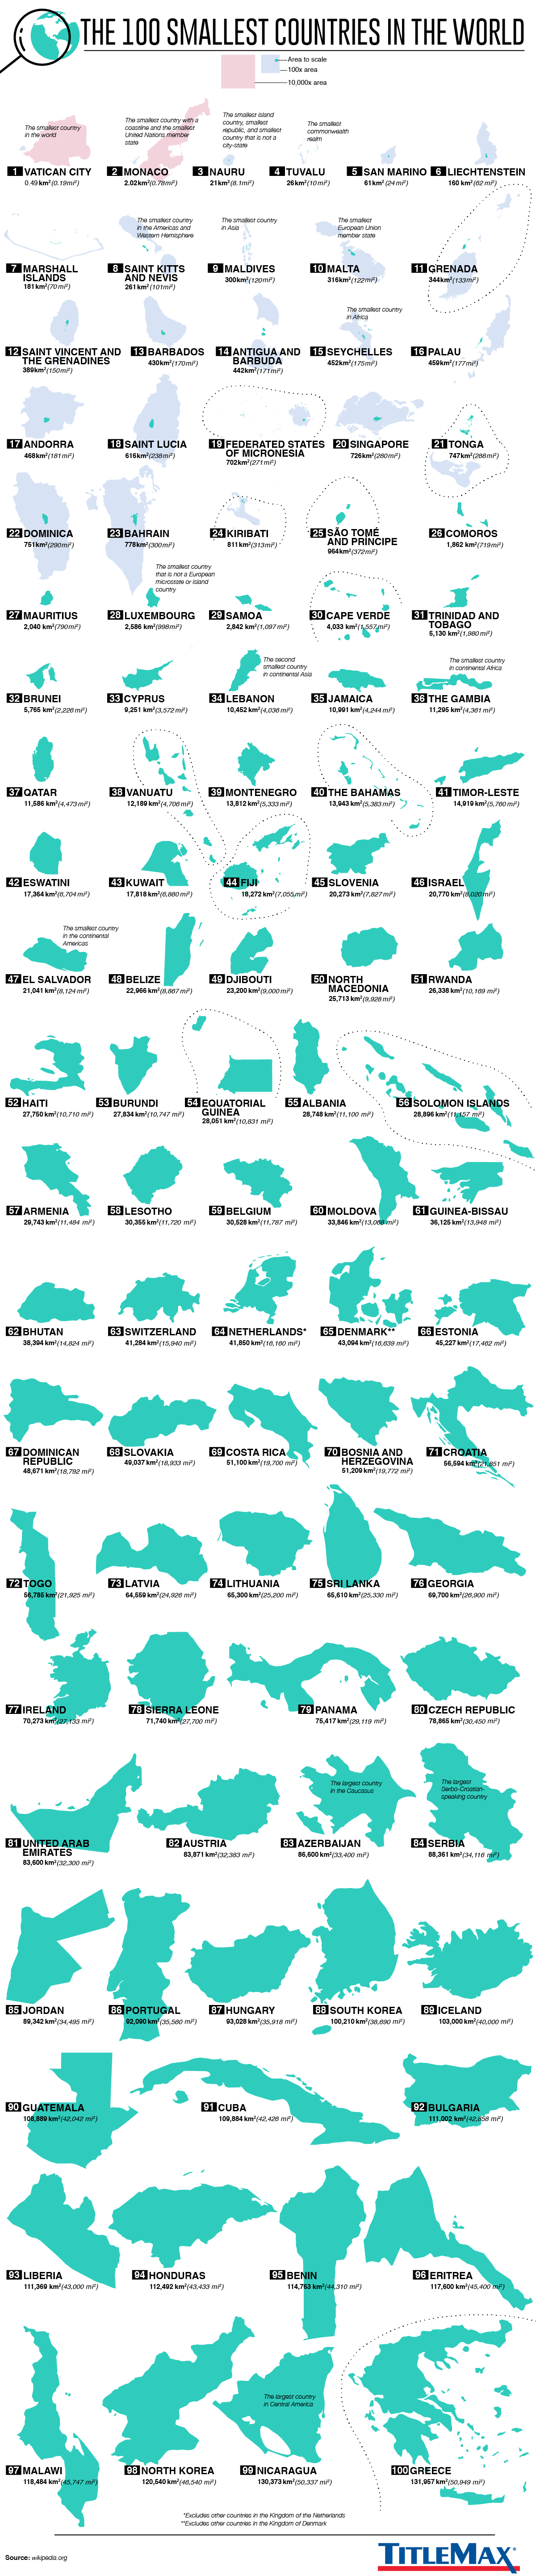 los 100 paises mas pequeños del mundo